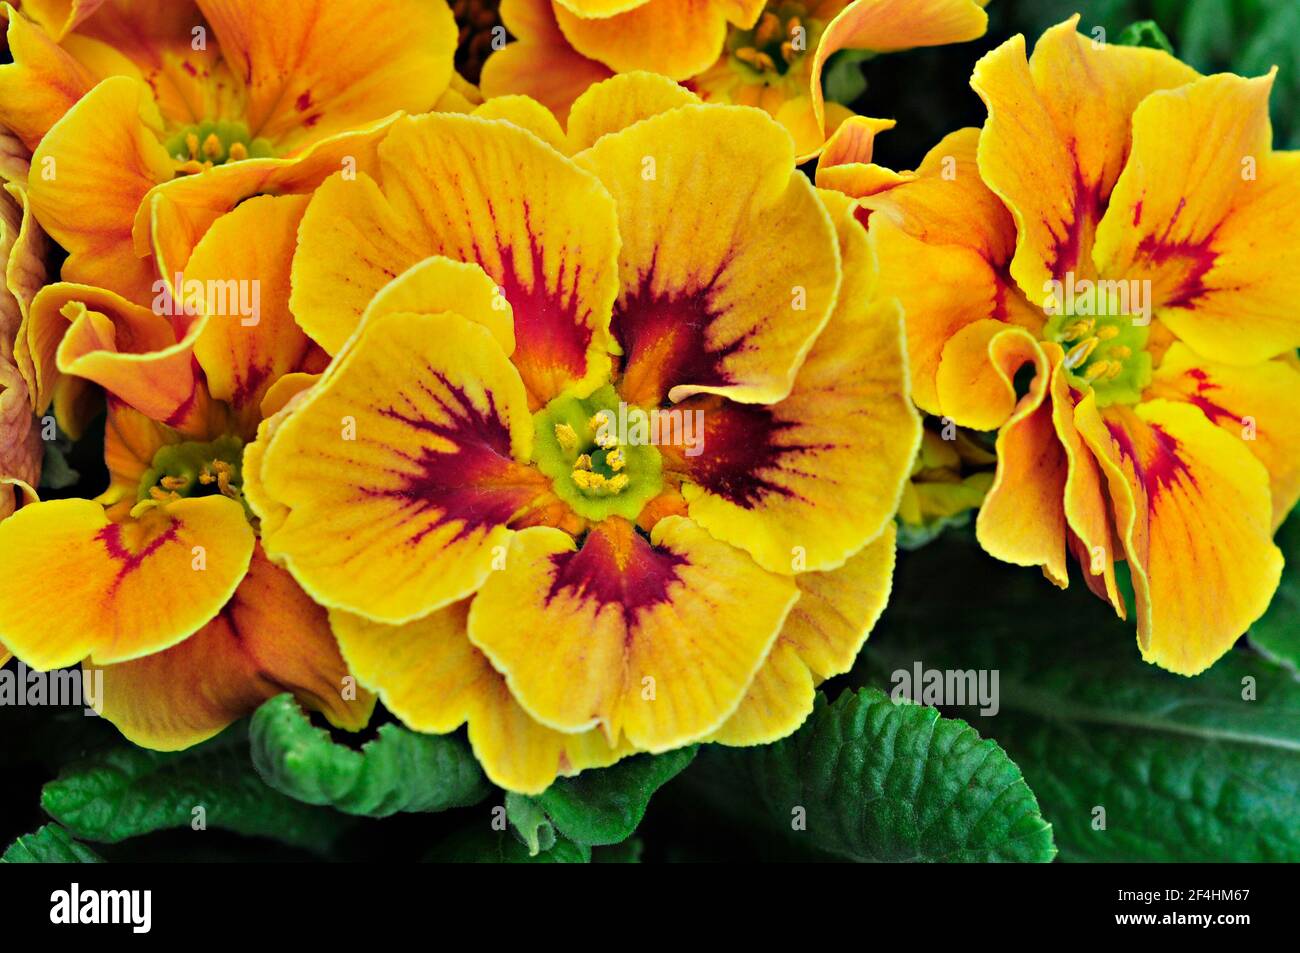 Primo piano di primula vulgaris Marietta una rosetta bicolore F1 Polyanthus che è una primavera gialla e rossa fioritura sempreverde perenne duro Foto Stock